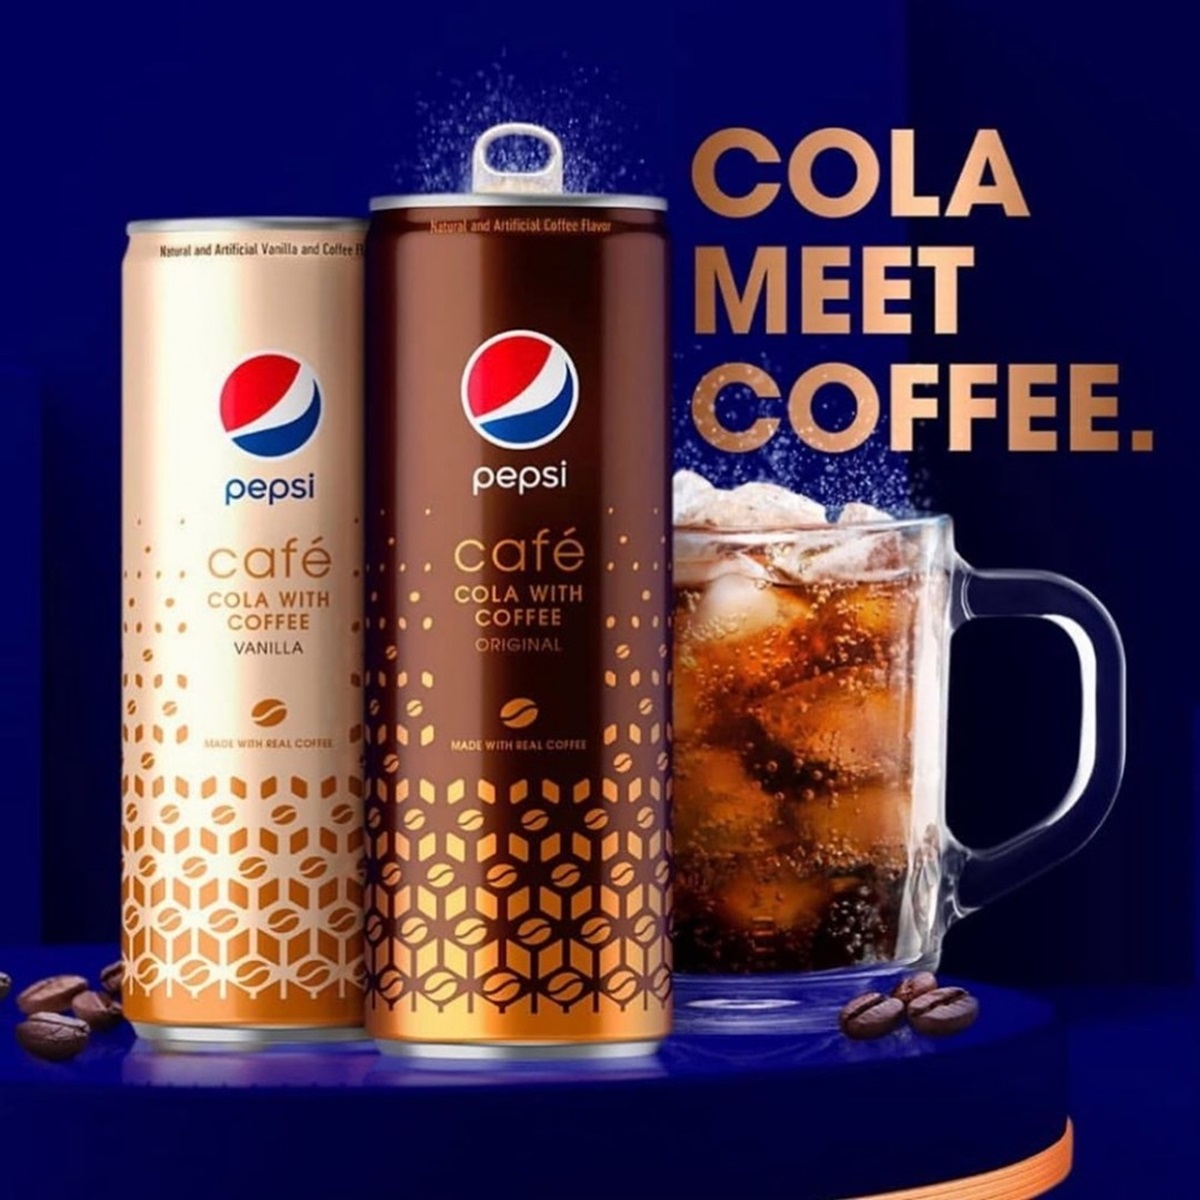 超狂組合！百事可樂新口味「咖啡可樂」灌進雙倍咖啡因，強力氣泡衝腦超提神